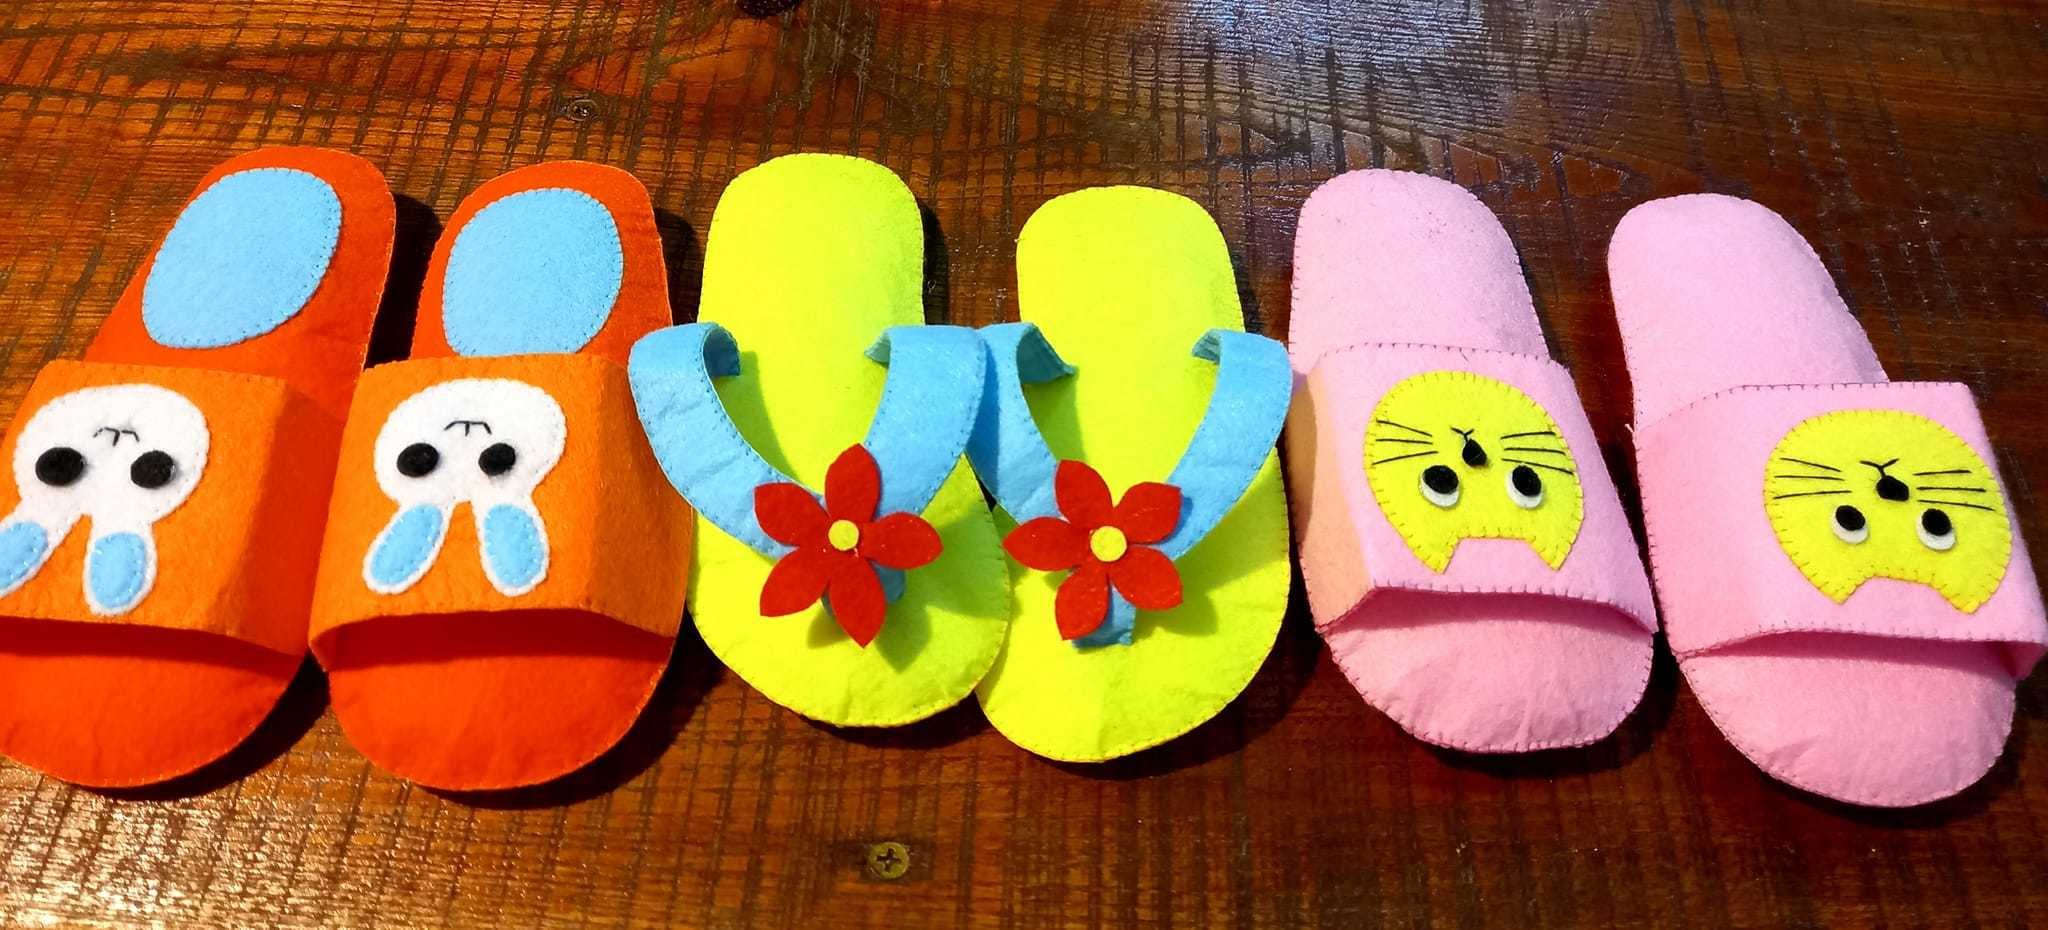 Mê mẩn ngắm những bộ đồ chơi khâu tay của cô giáo Thanh Hóa làm cho 4 con